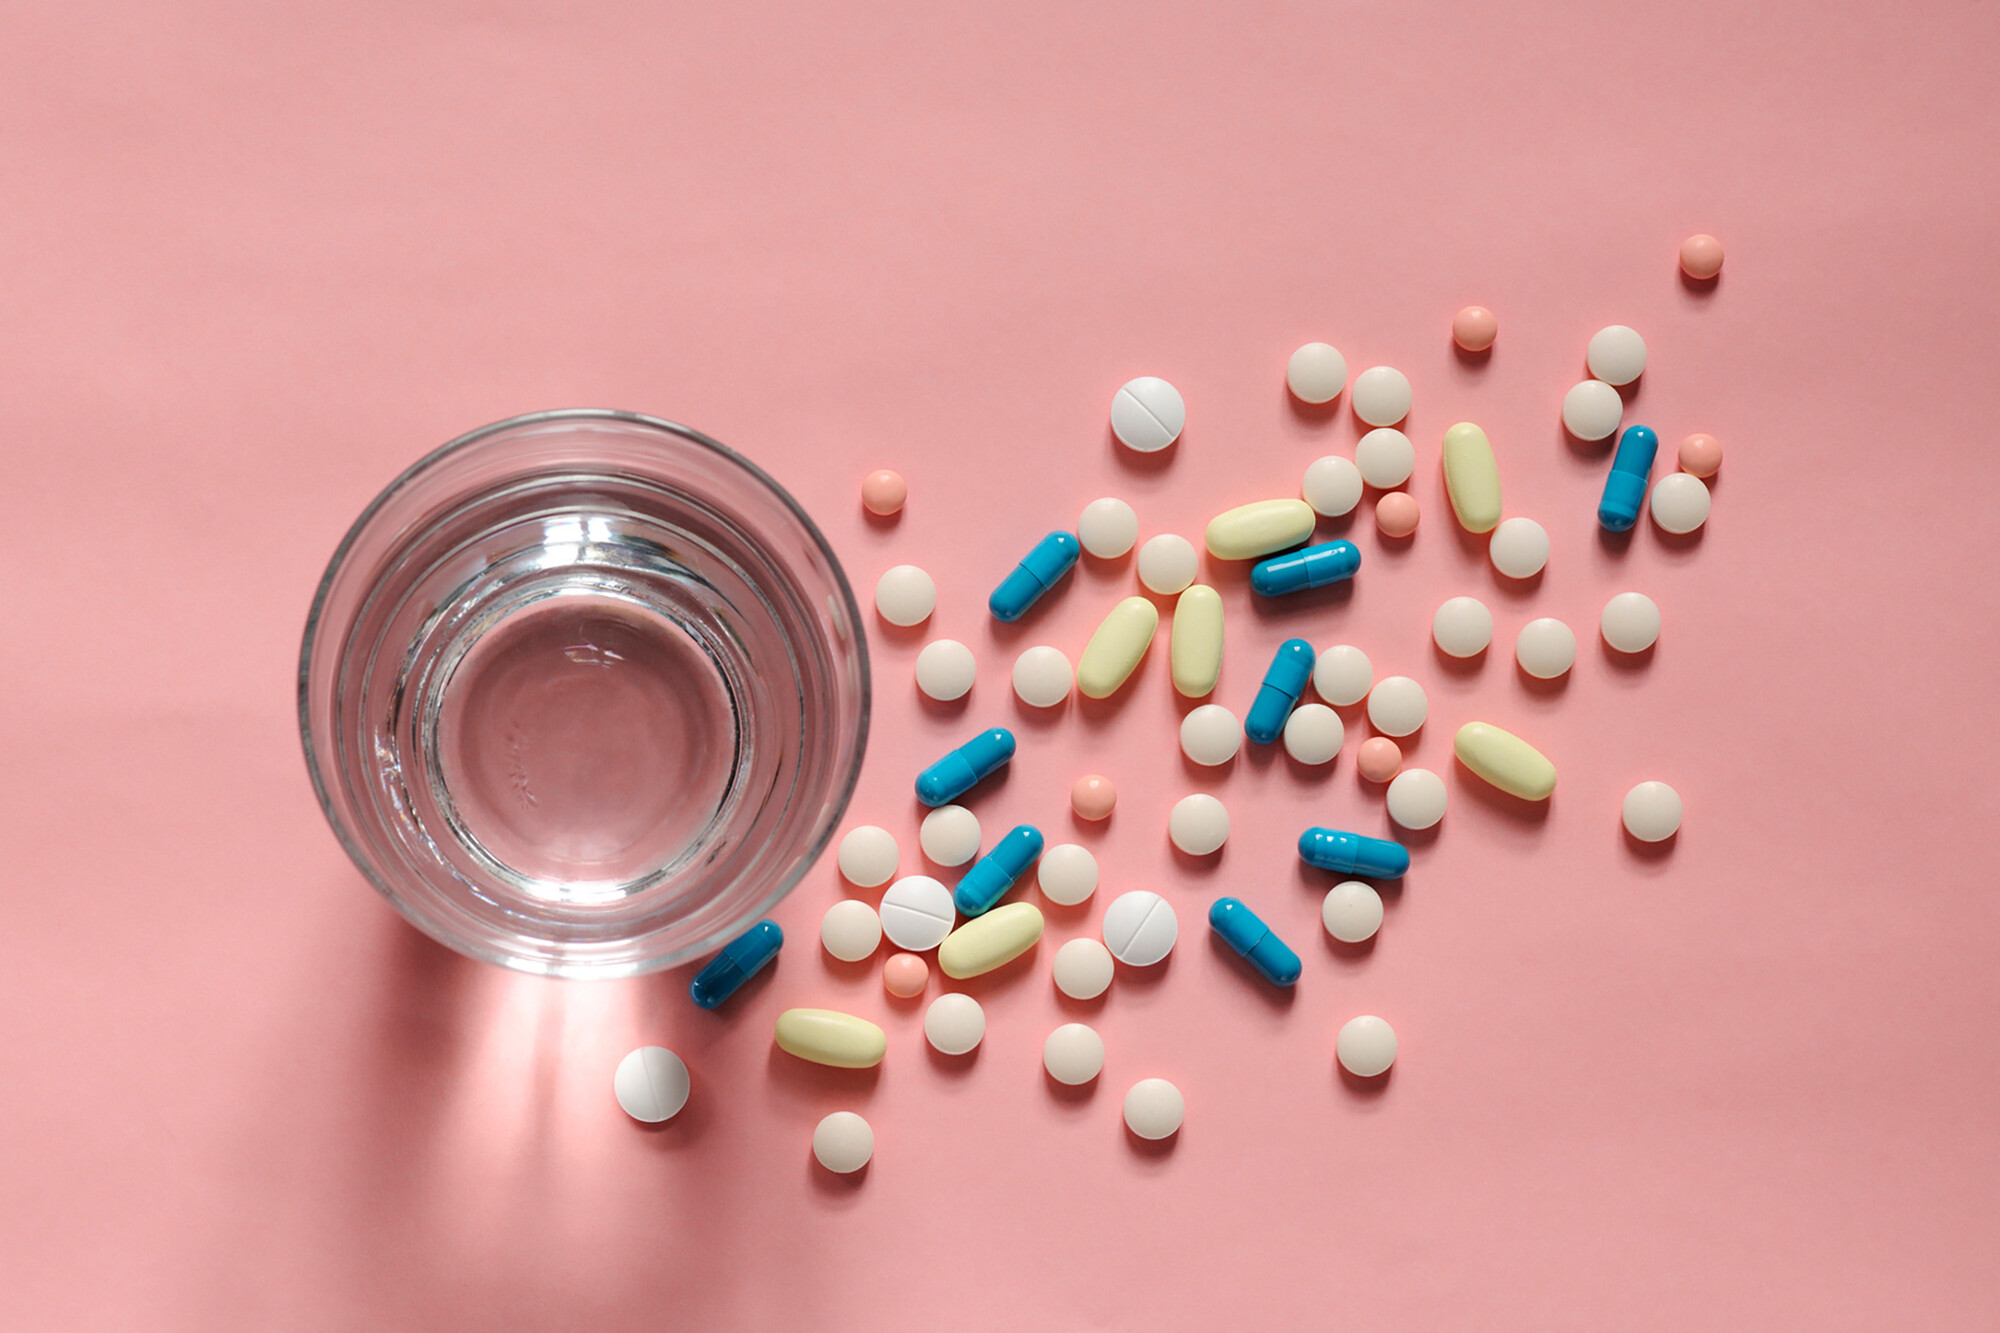 Einige Erkrankungen können den Einsatz mehrerer Arzneimittel erfordern. Hier sollen Kombinationspräparate, die mehrere Wirkstoffe in einer Tablette vereinen, die Einnahme erleichtern und die Adhärenz verbessern. Oft wird jedoch aus wirtschaftlichen Gründen von deren Einsatz abgeraten – zu Recht?